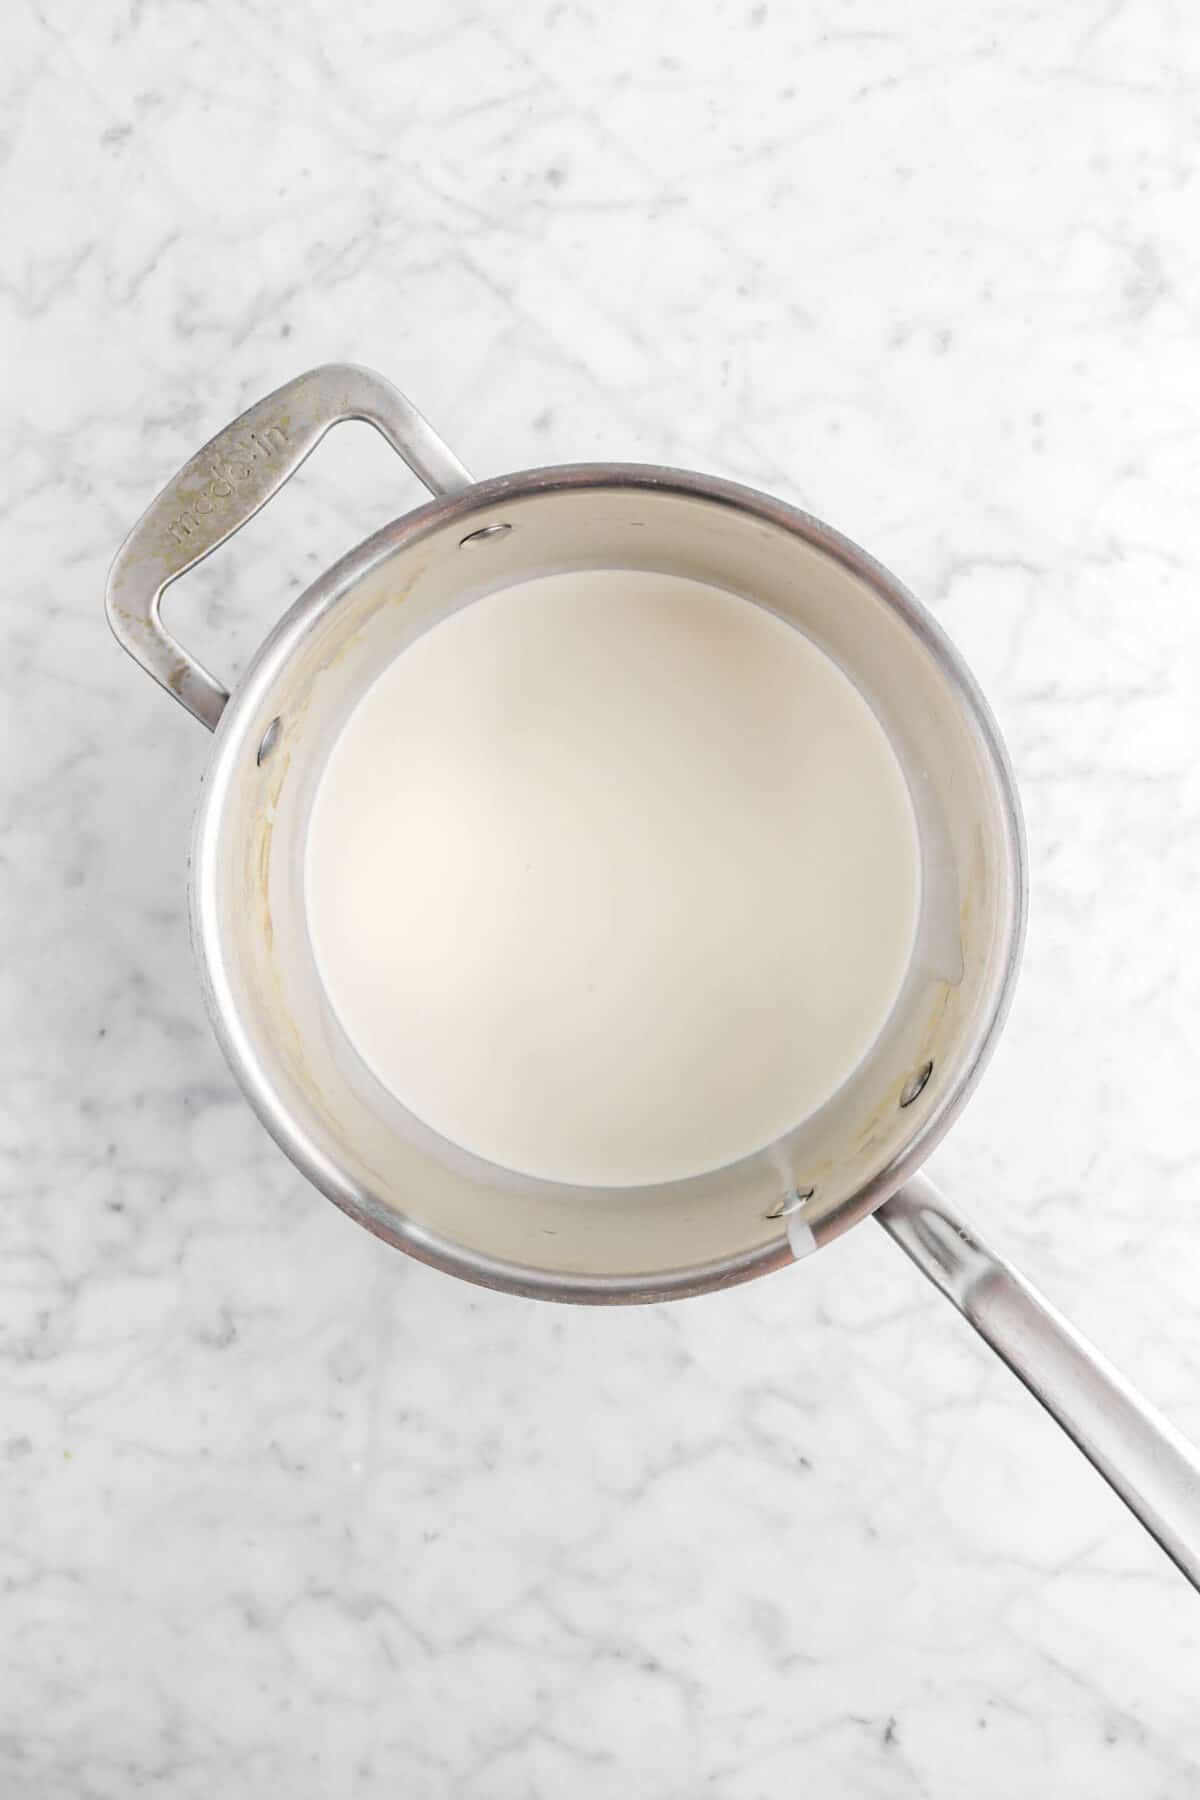 cream in pot